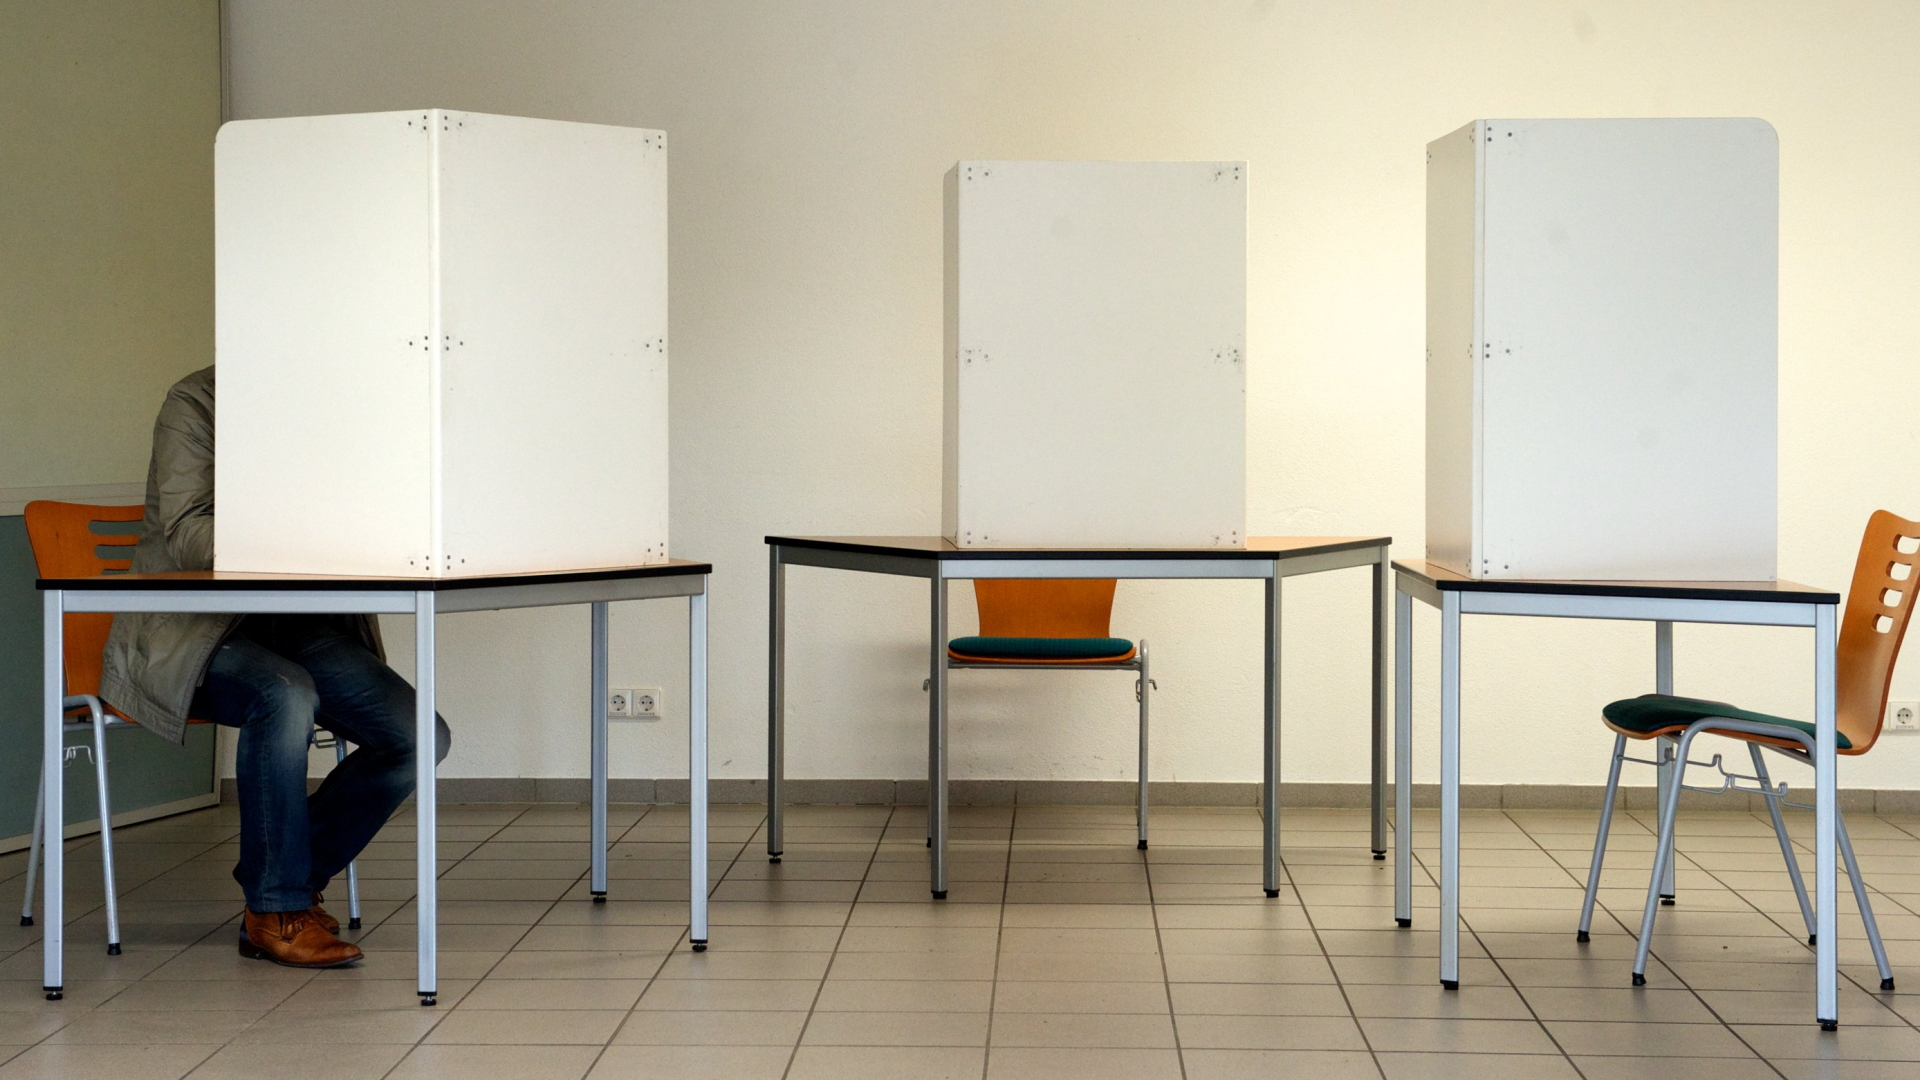 Ein einzelner Mann sitzt in einer von drei Wahlkabinen. | dpa